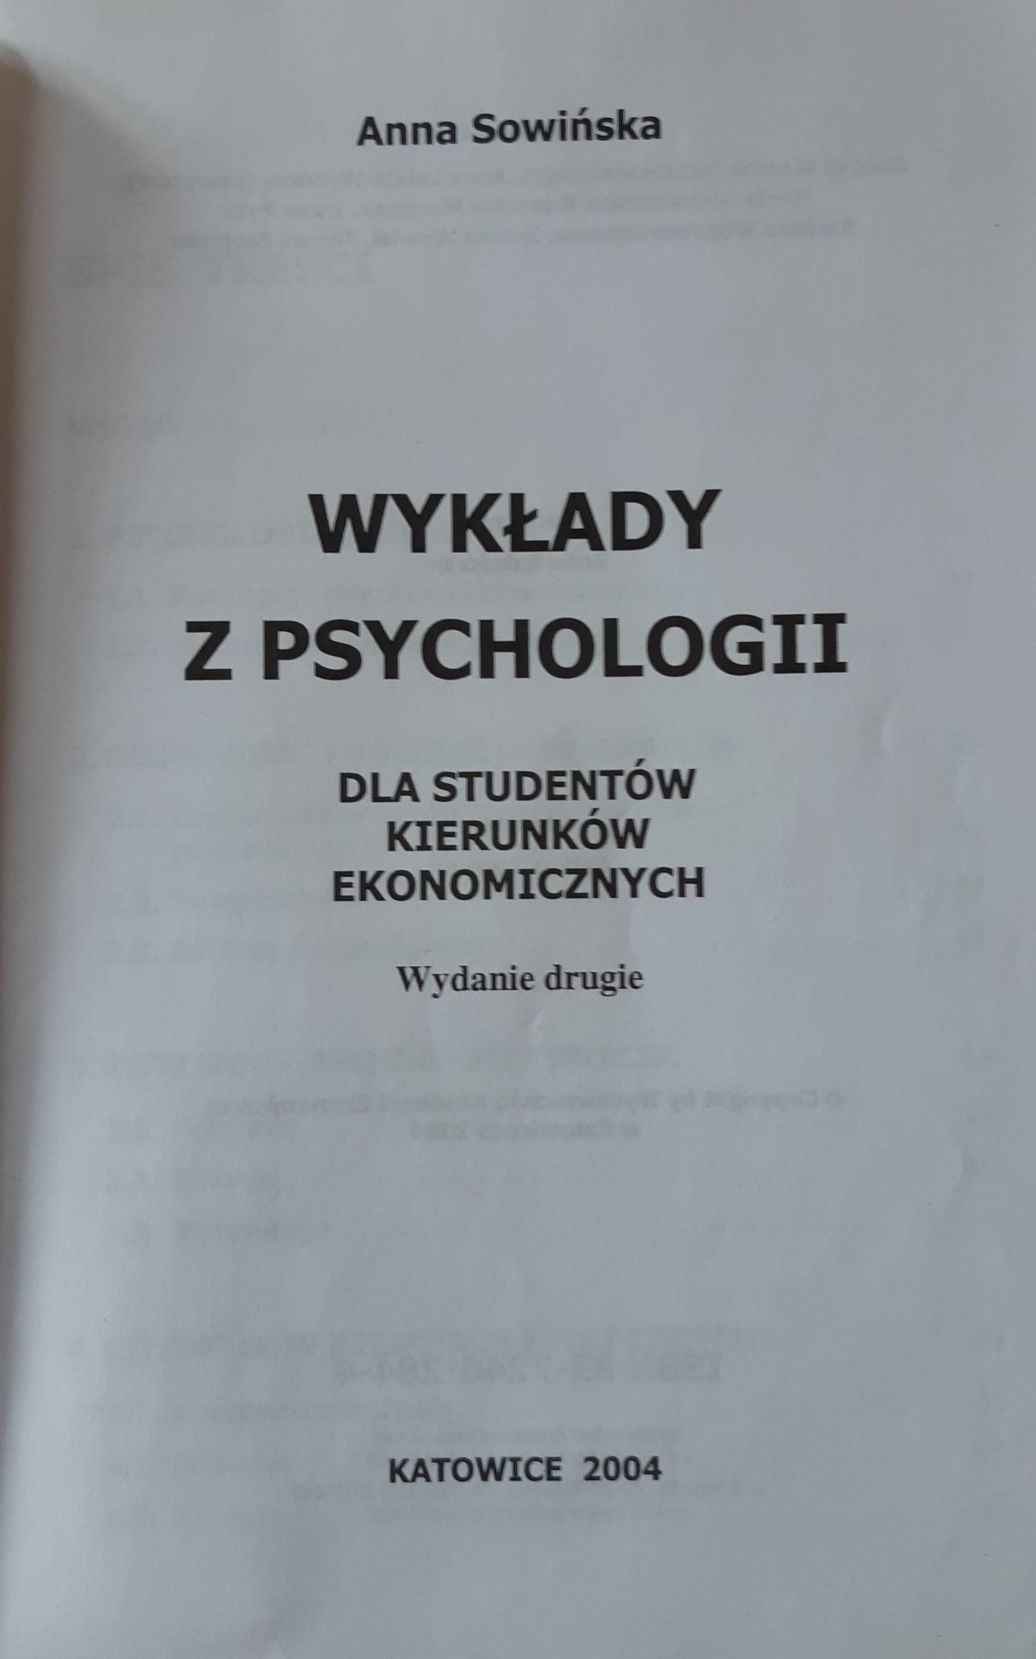 Wykłady z psychologii A. Sowińska